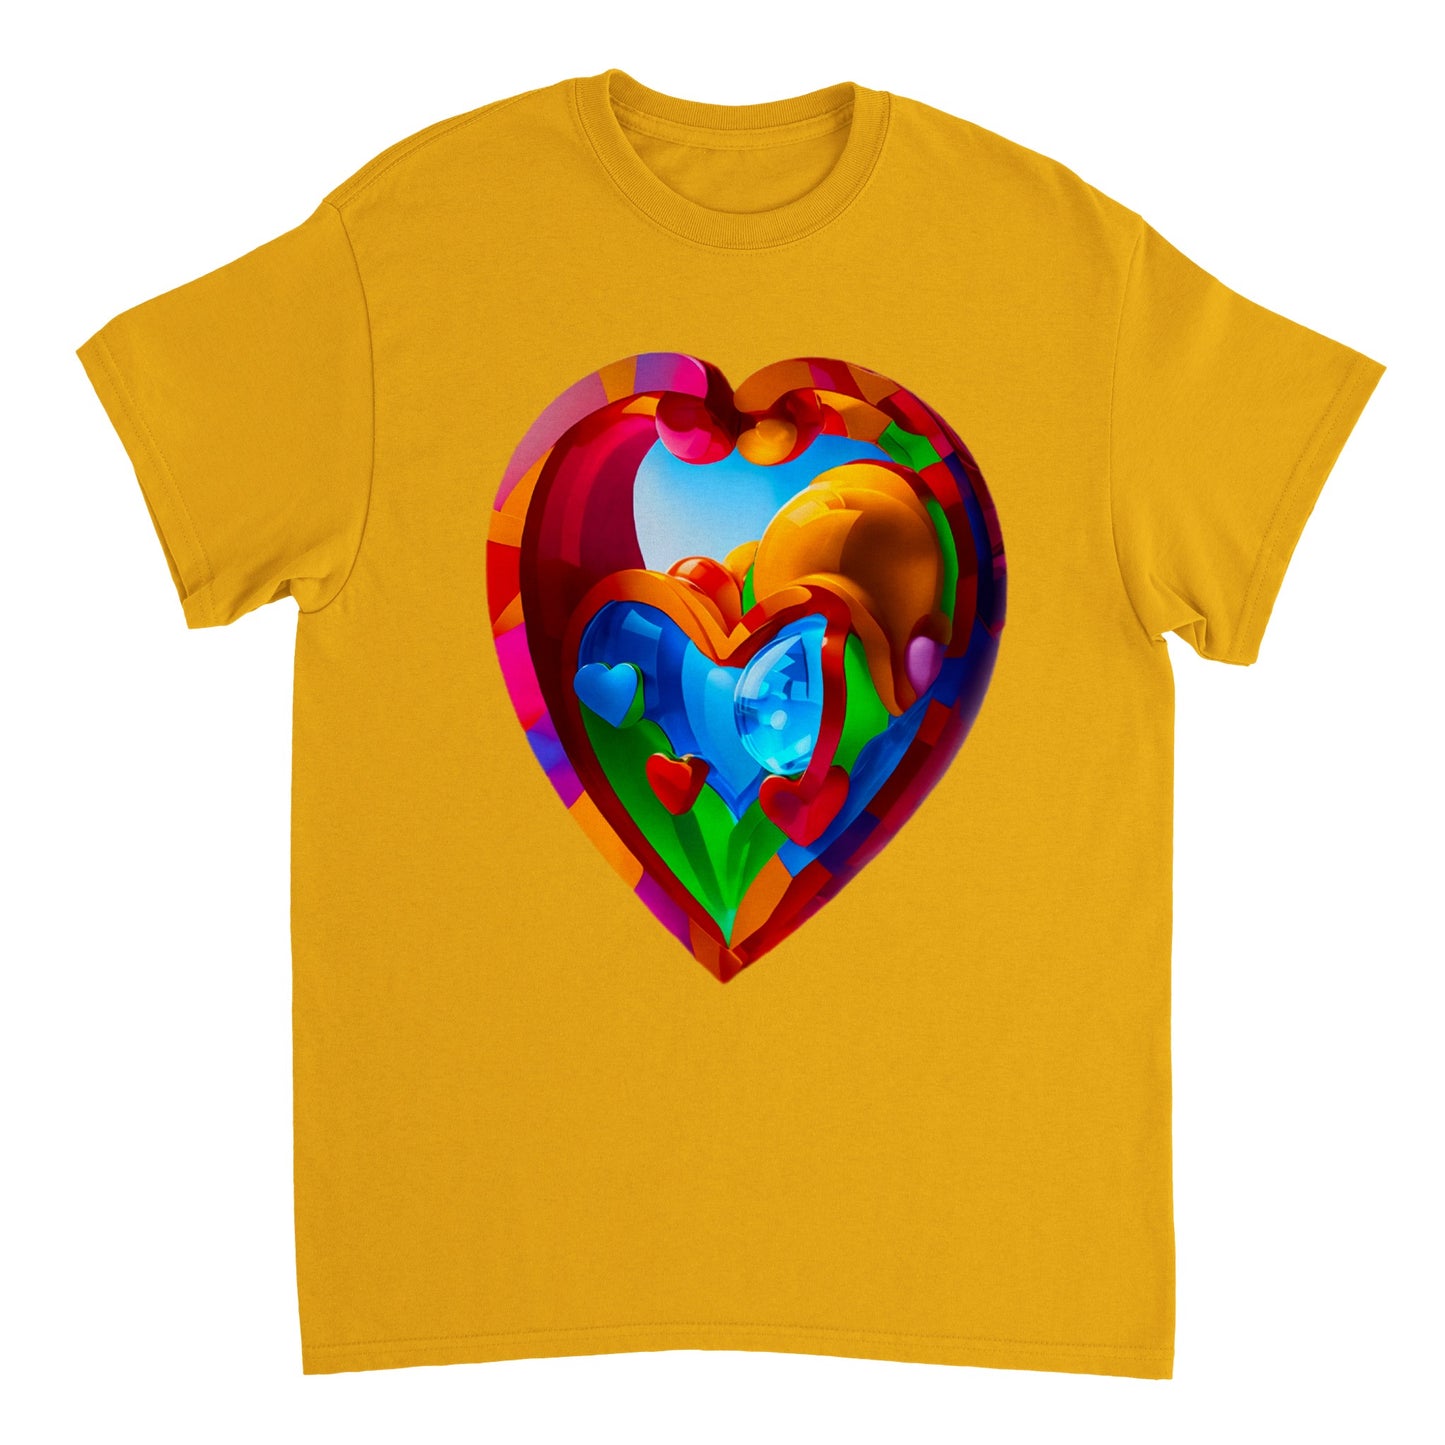 Love Heart - Heavyweight Unisex Crewneck T-shirt 33